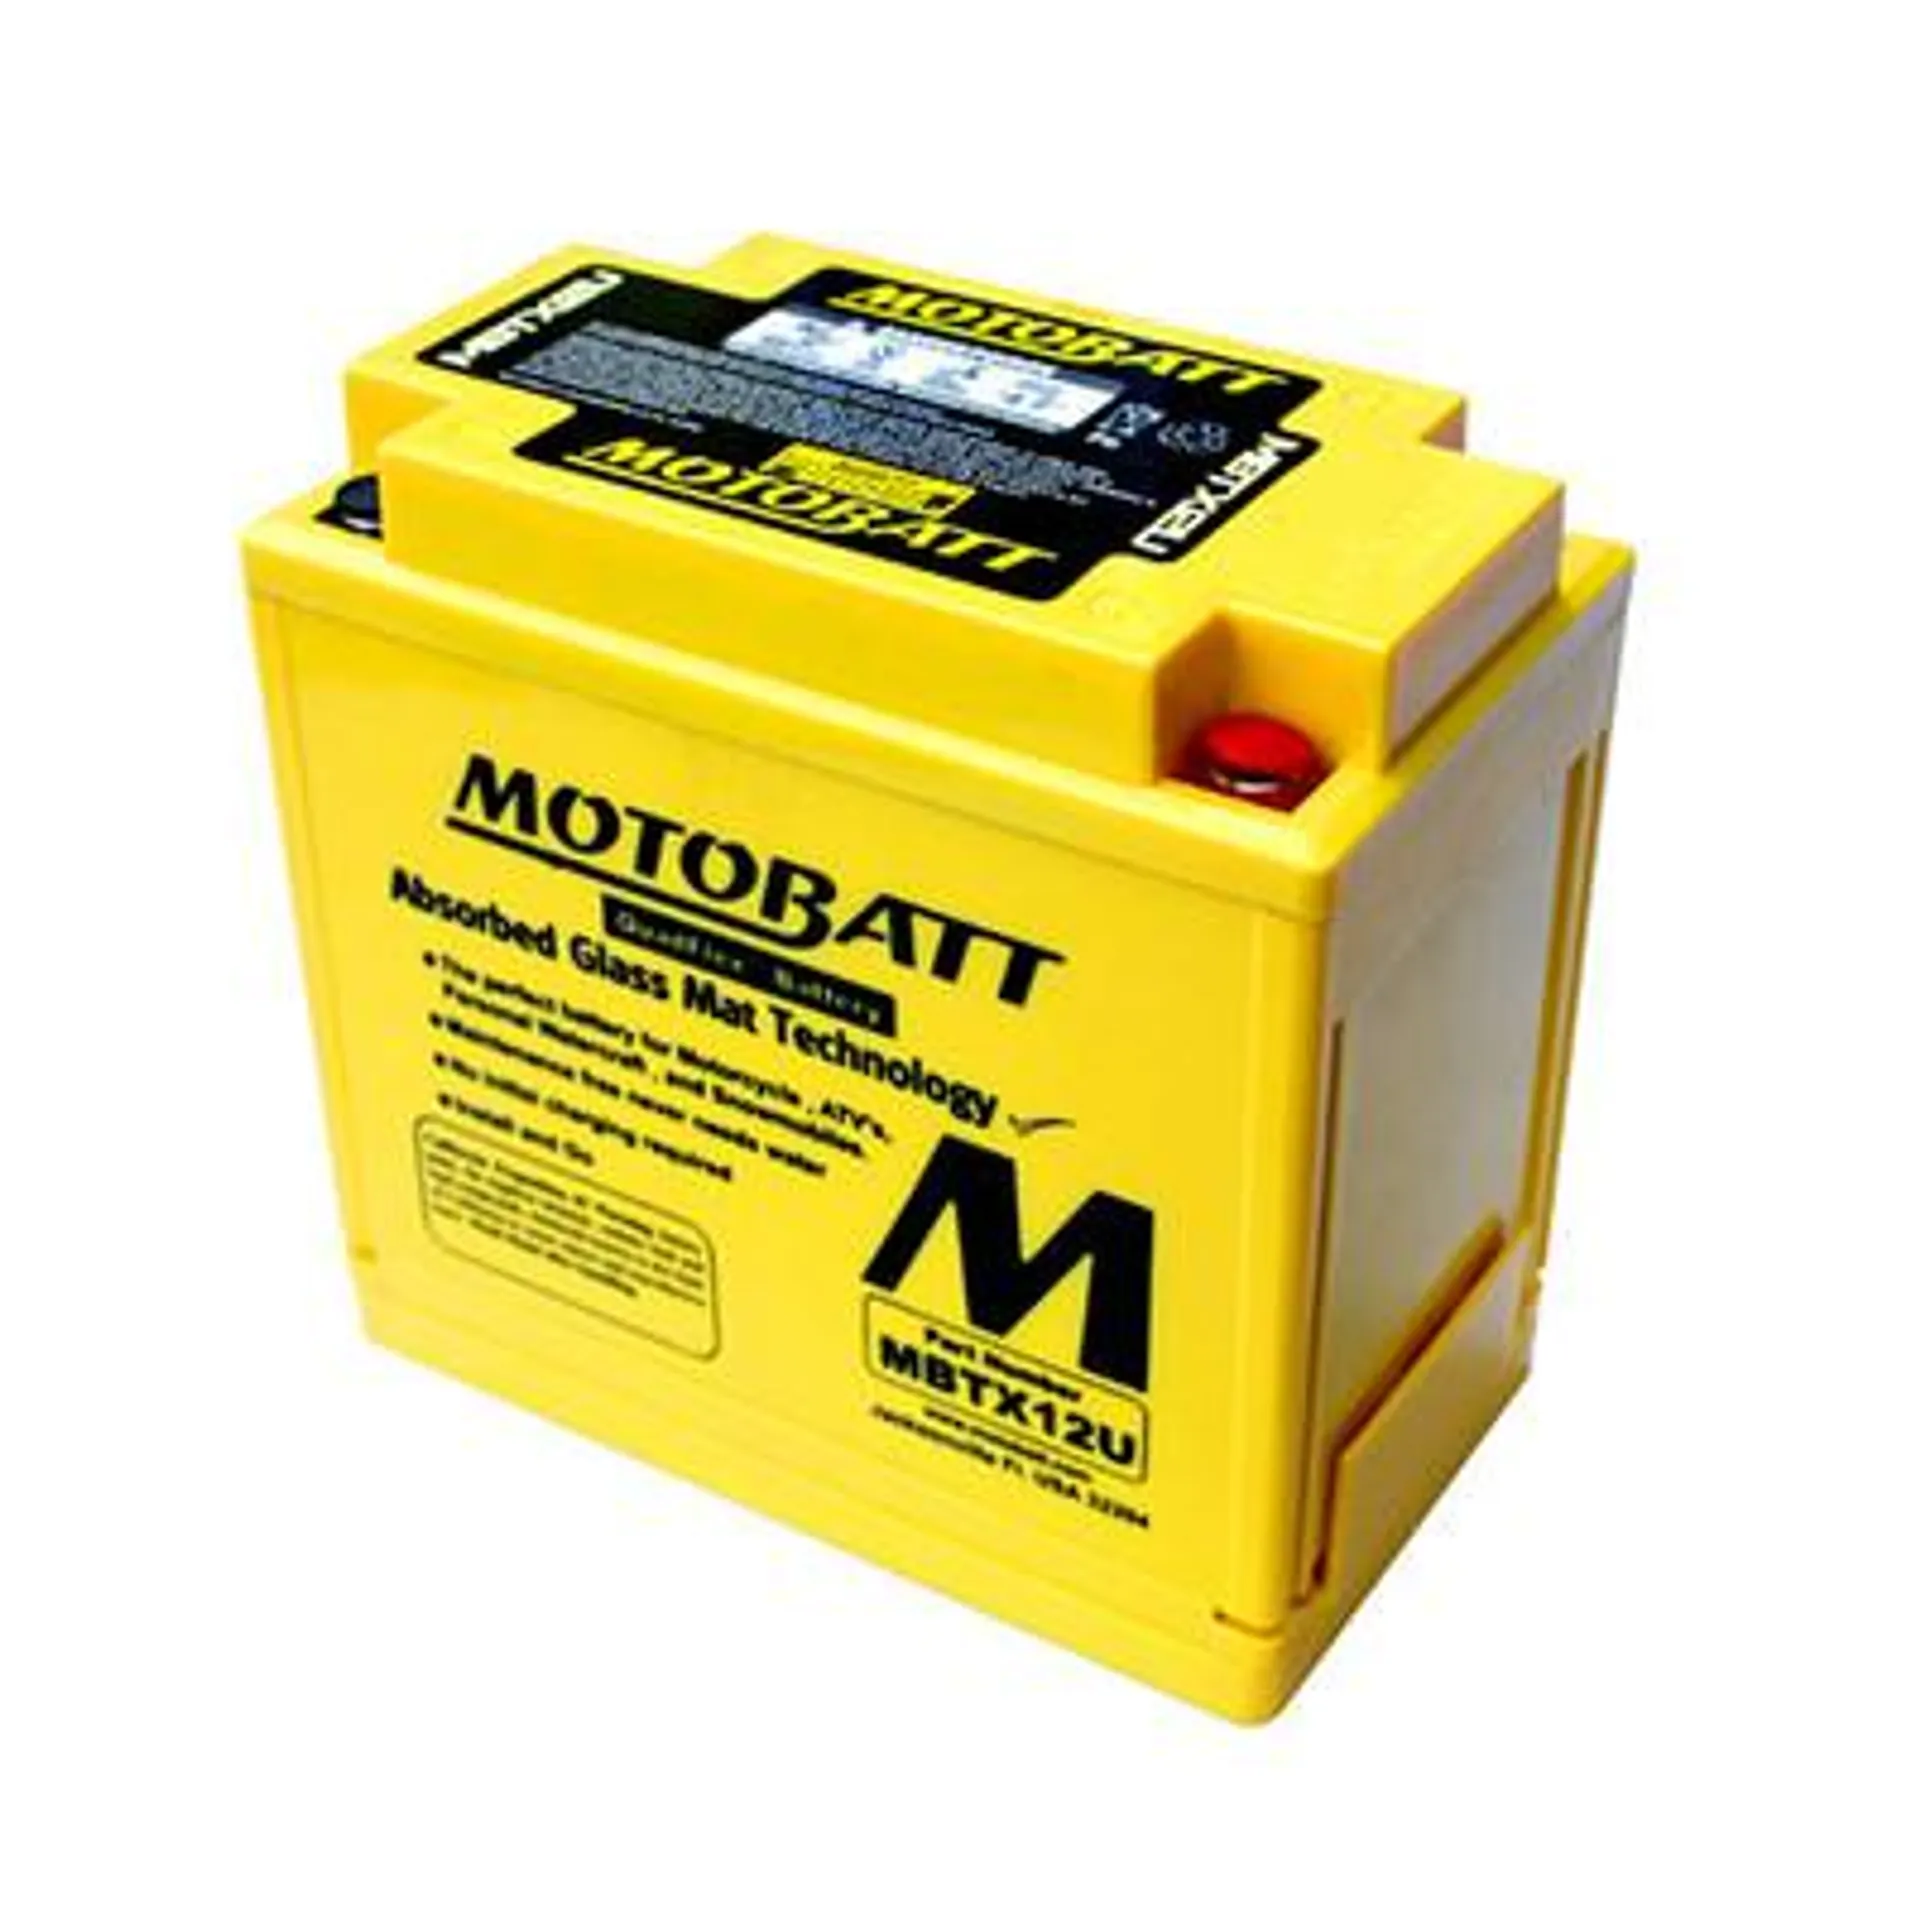 MBTX12U 12V Motobatt Battery